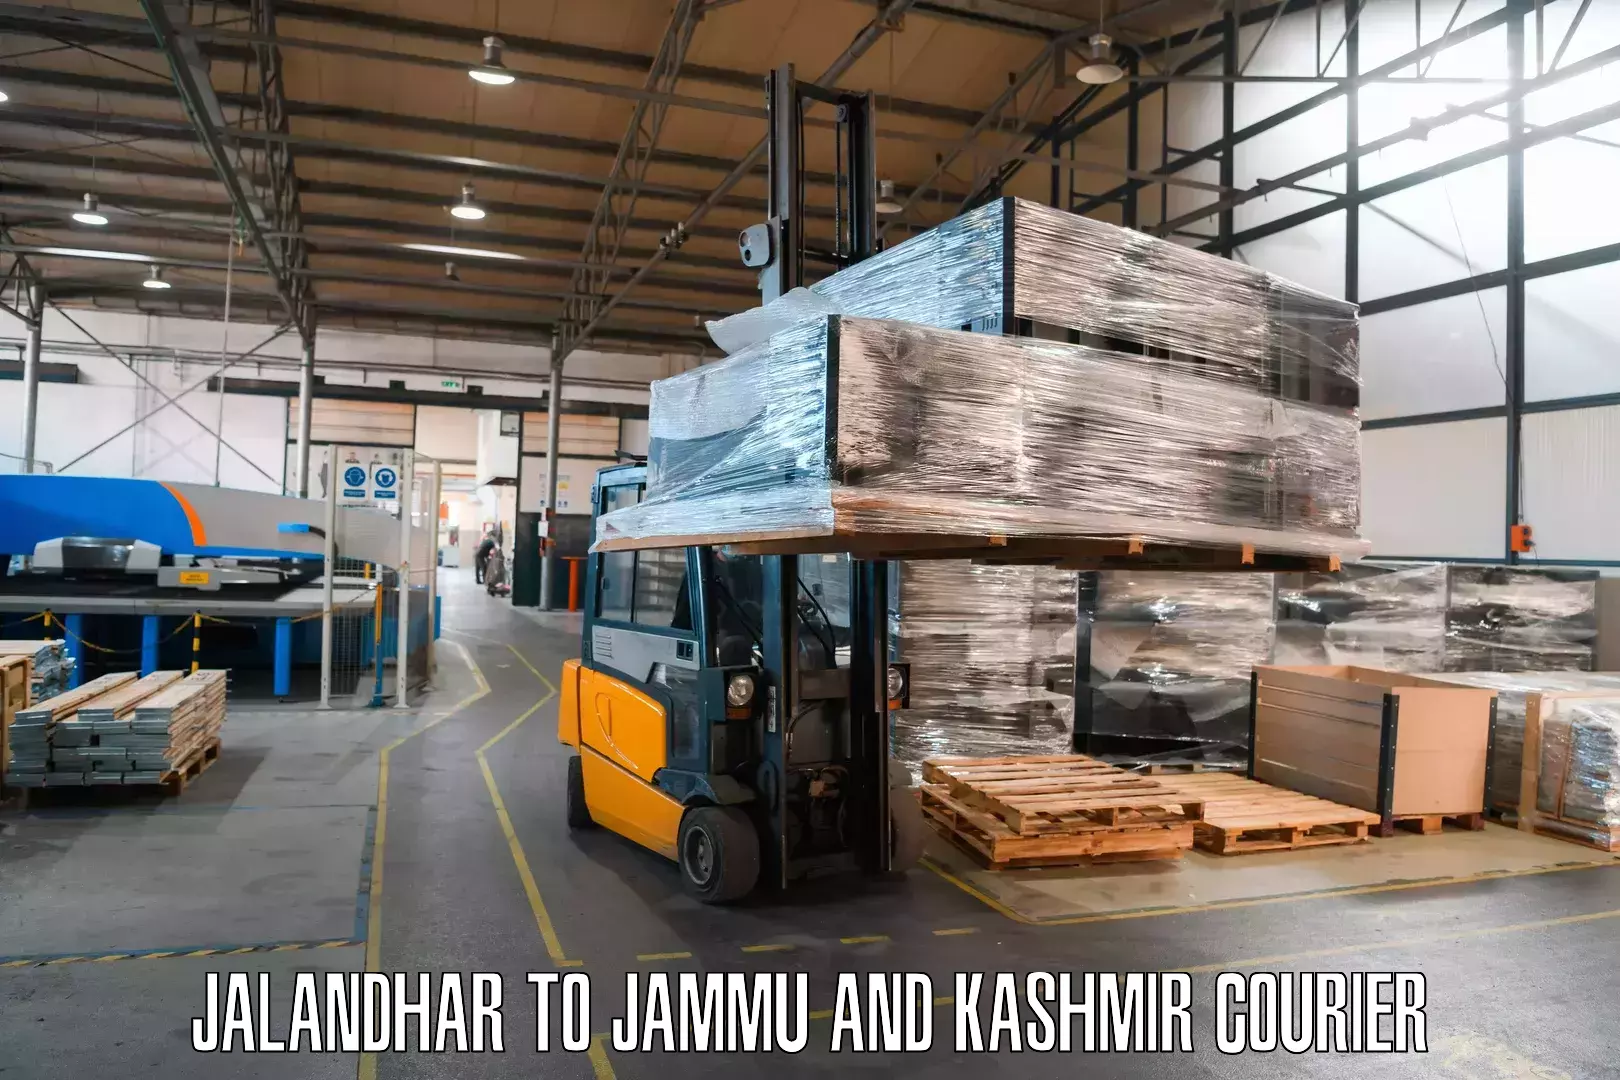 Global freight services Jalandhar to Kishtwar